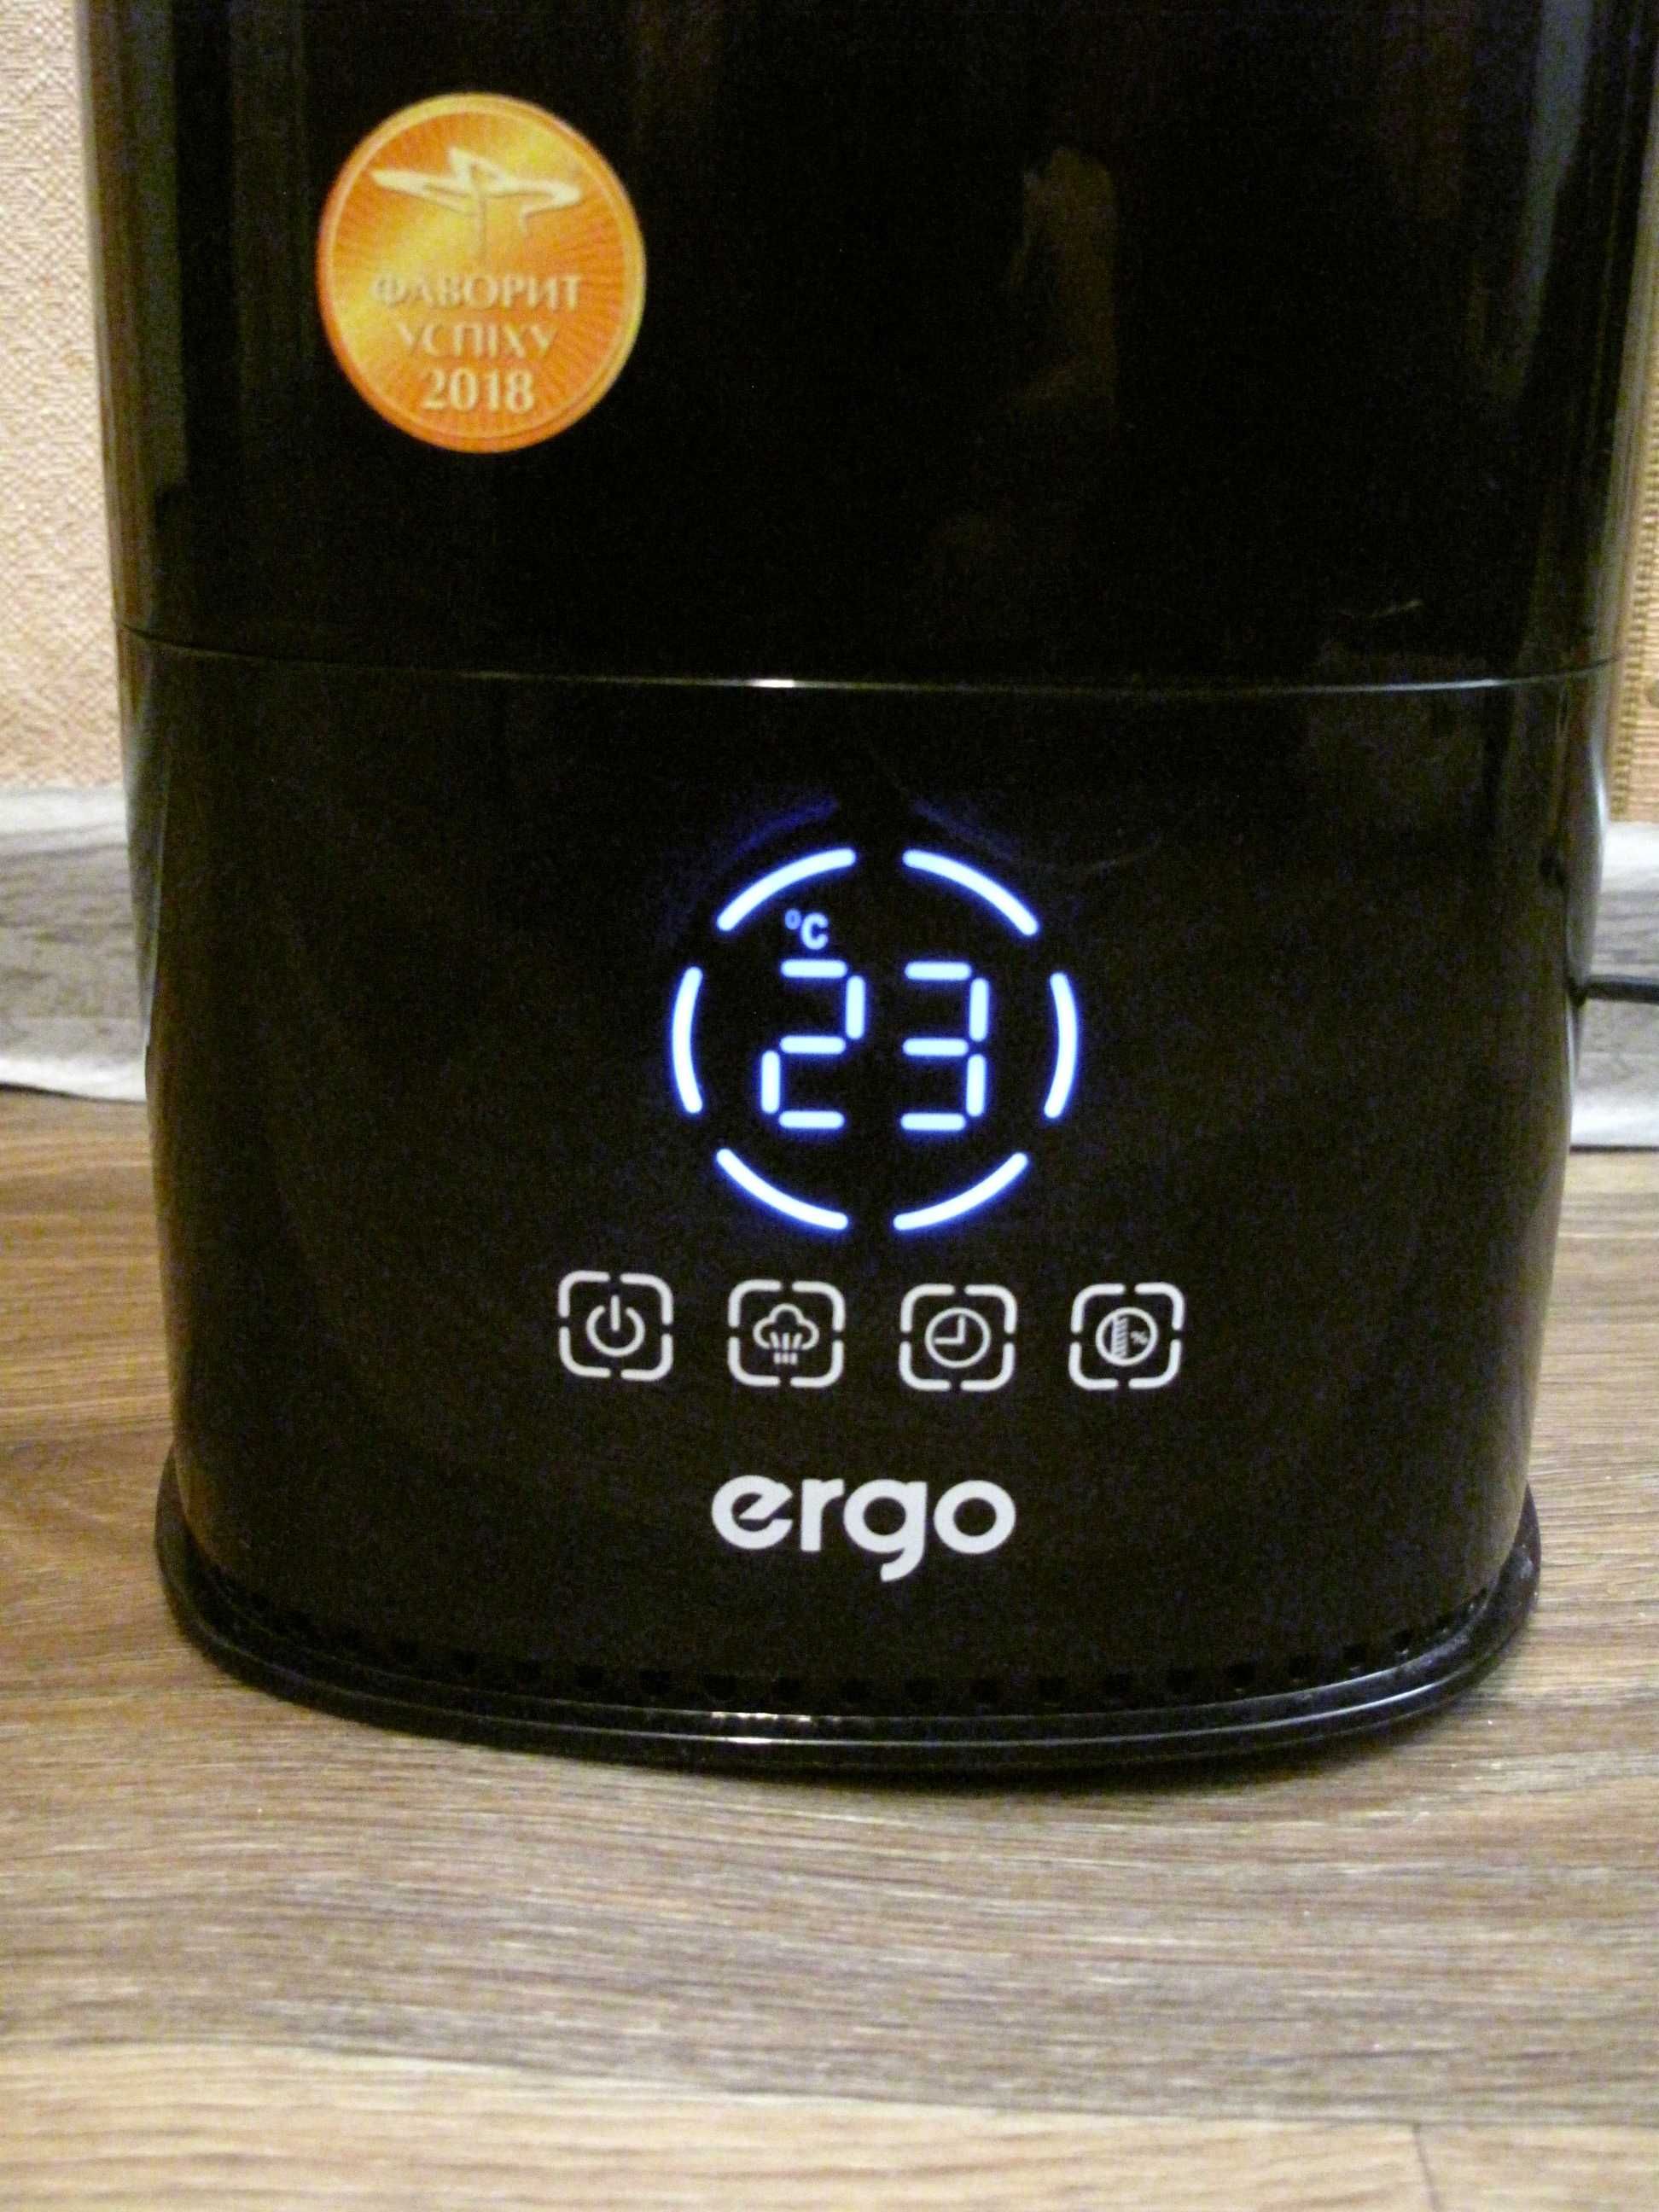 Увлажнитель воздуха Ergo, гигрометр, термометр, таймер.